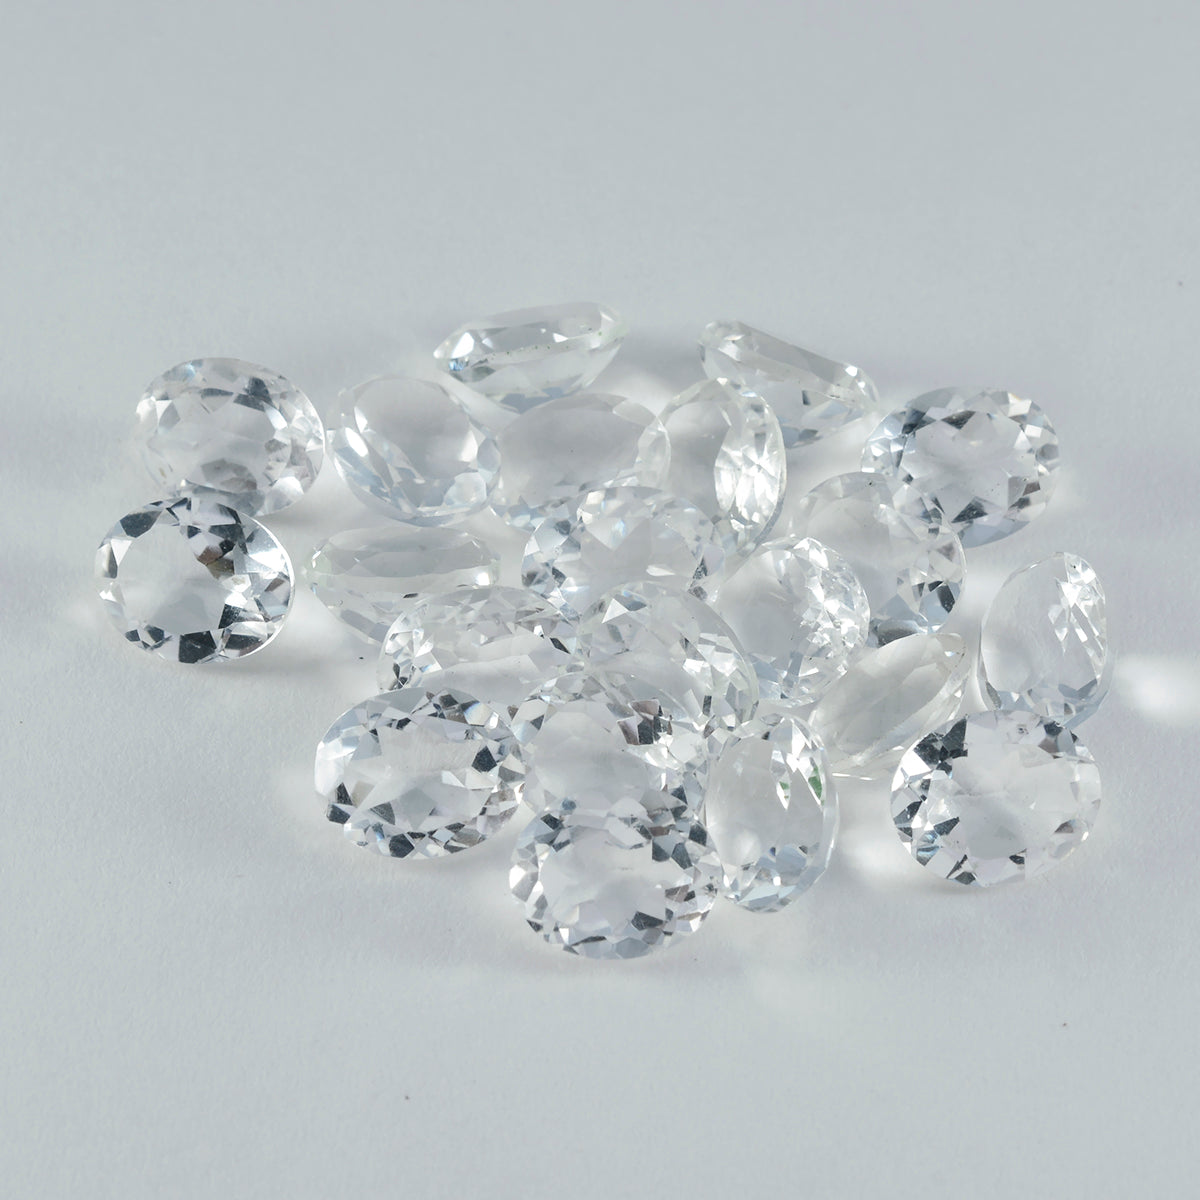 Riyogems 1 Stück weißer Kristallquarz, facettiert, 5 x 7 mm, ovale Form, hübscher Qualitäts-Edelstein